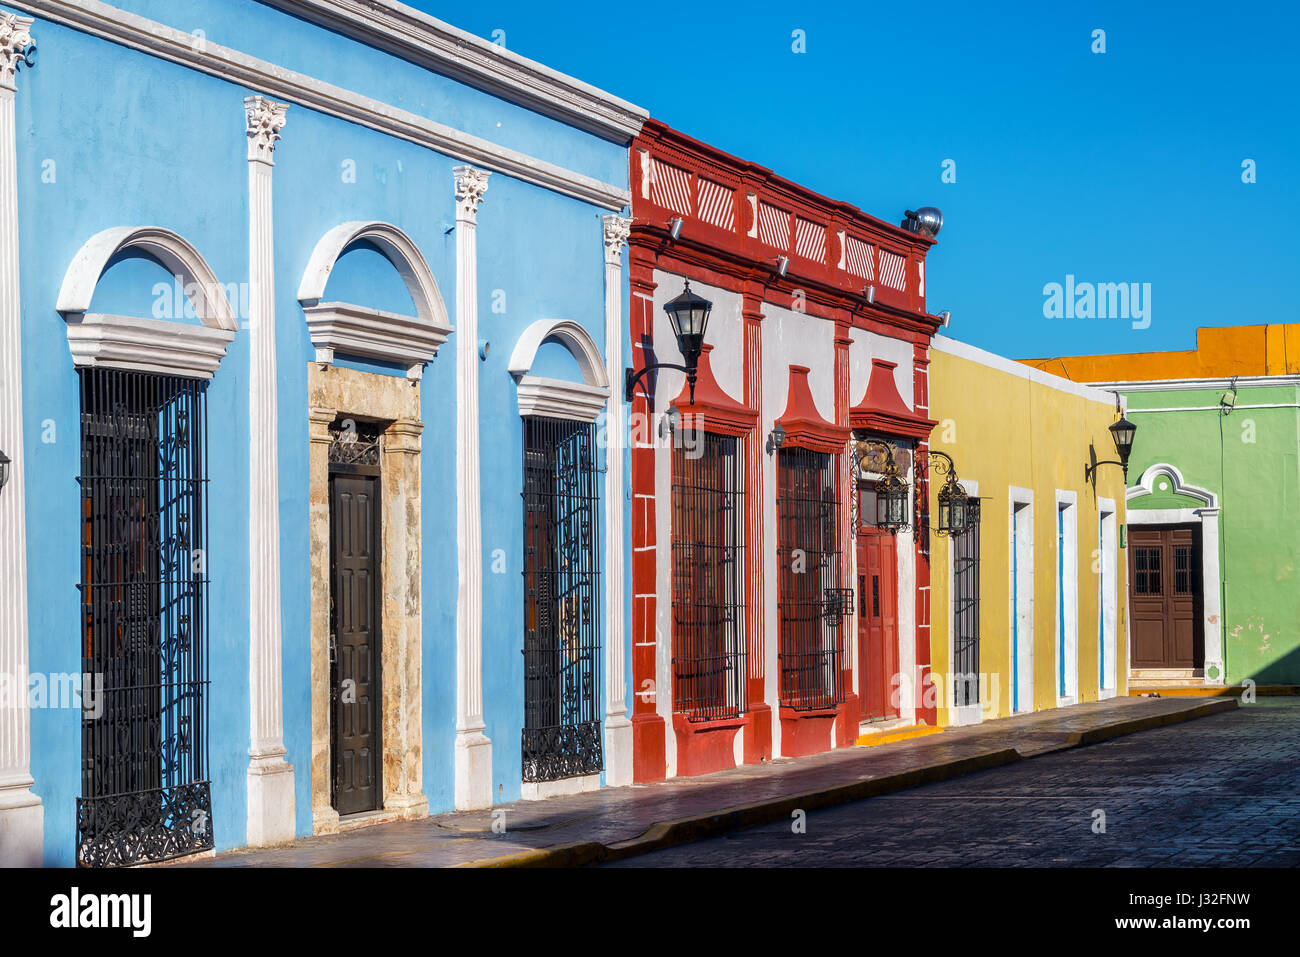 De beaux bâtiments coloniaux colorés dans le centre historique de Campeche, Mexique Banque D'Images